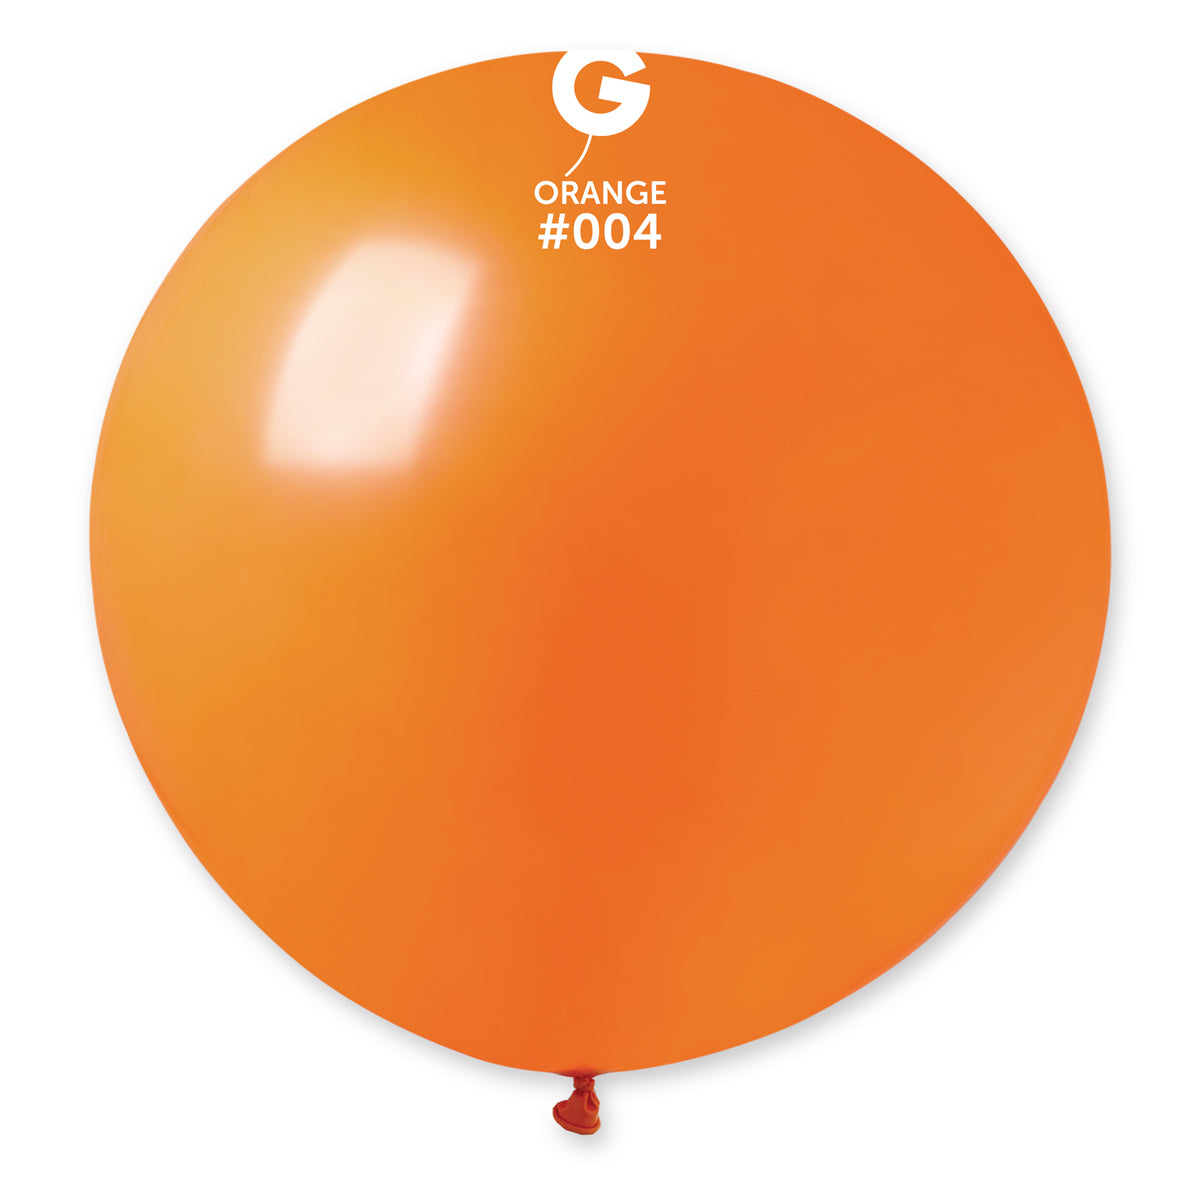 1 Count Orange Latex Balloon 31"